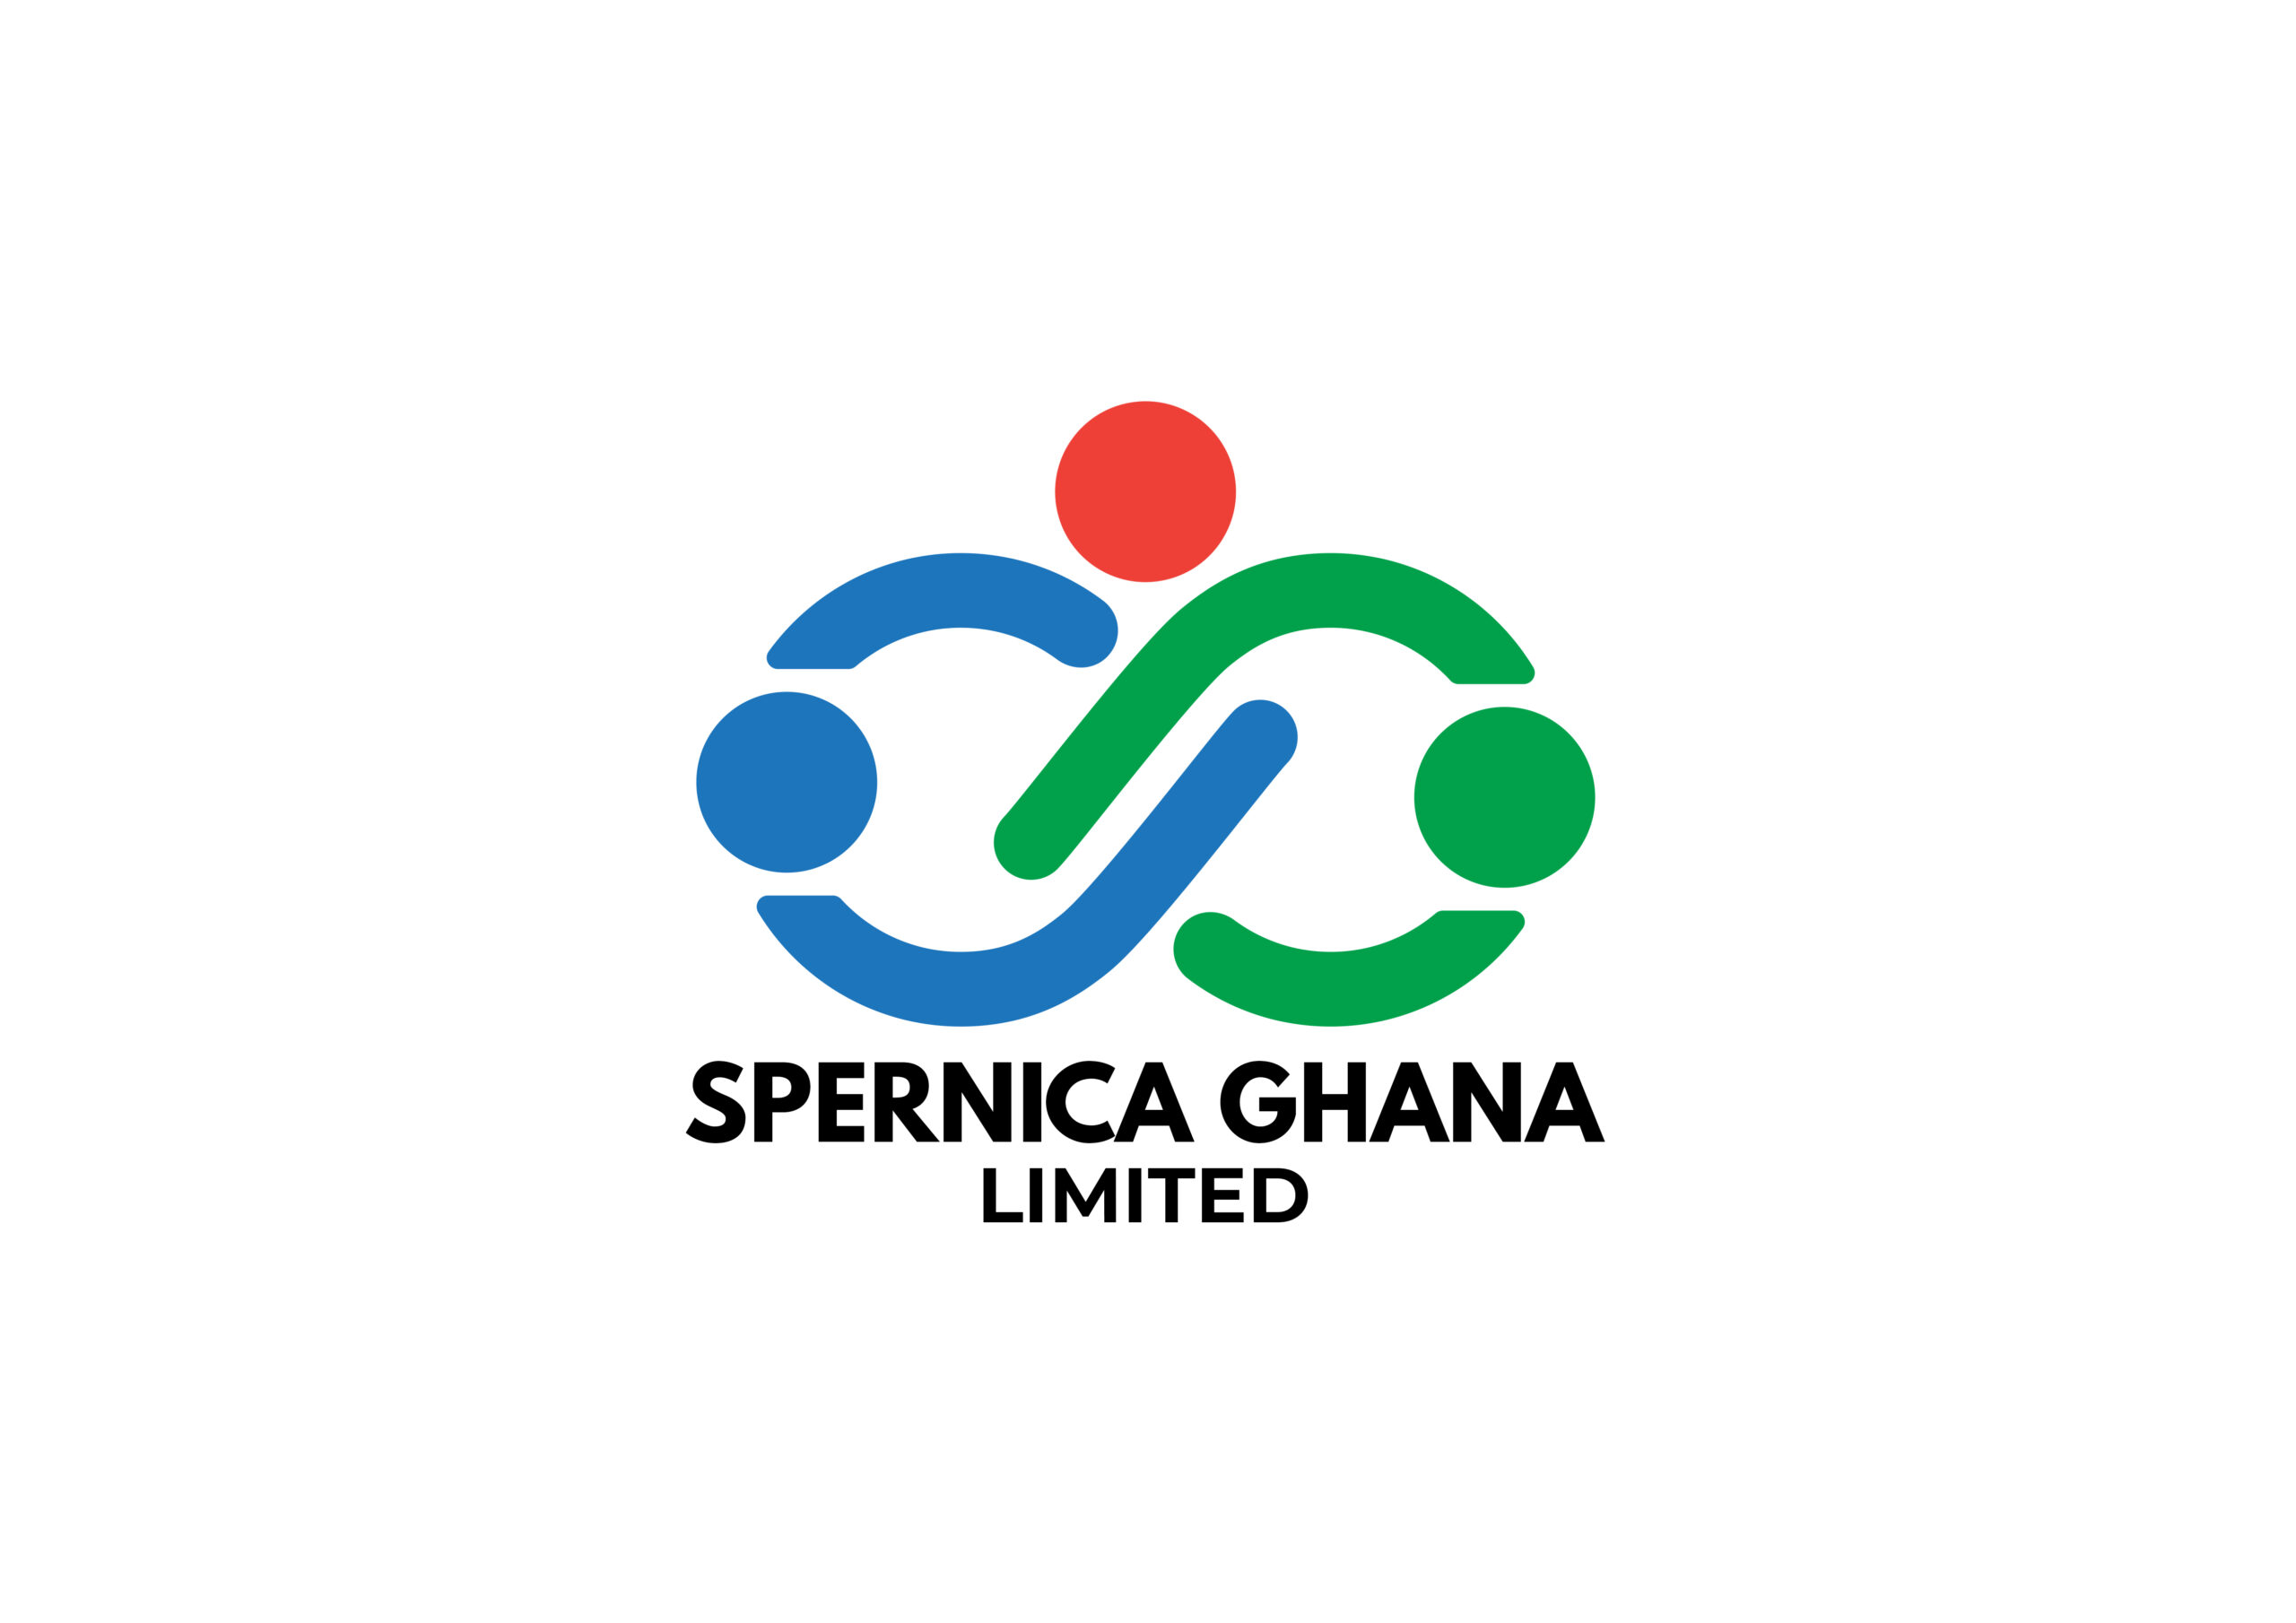 Spernica Ghana LTD